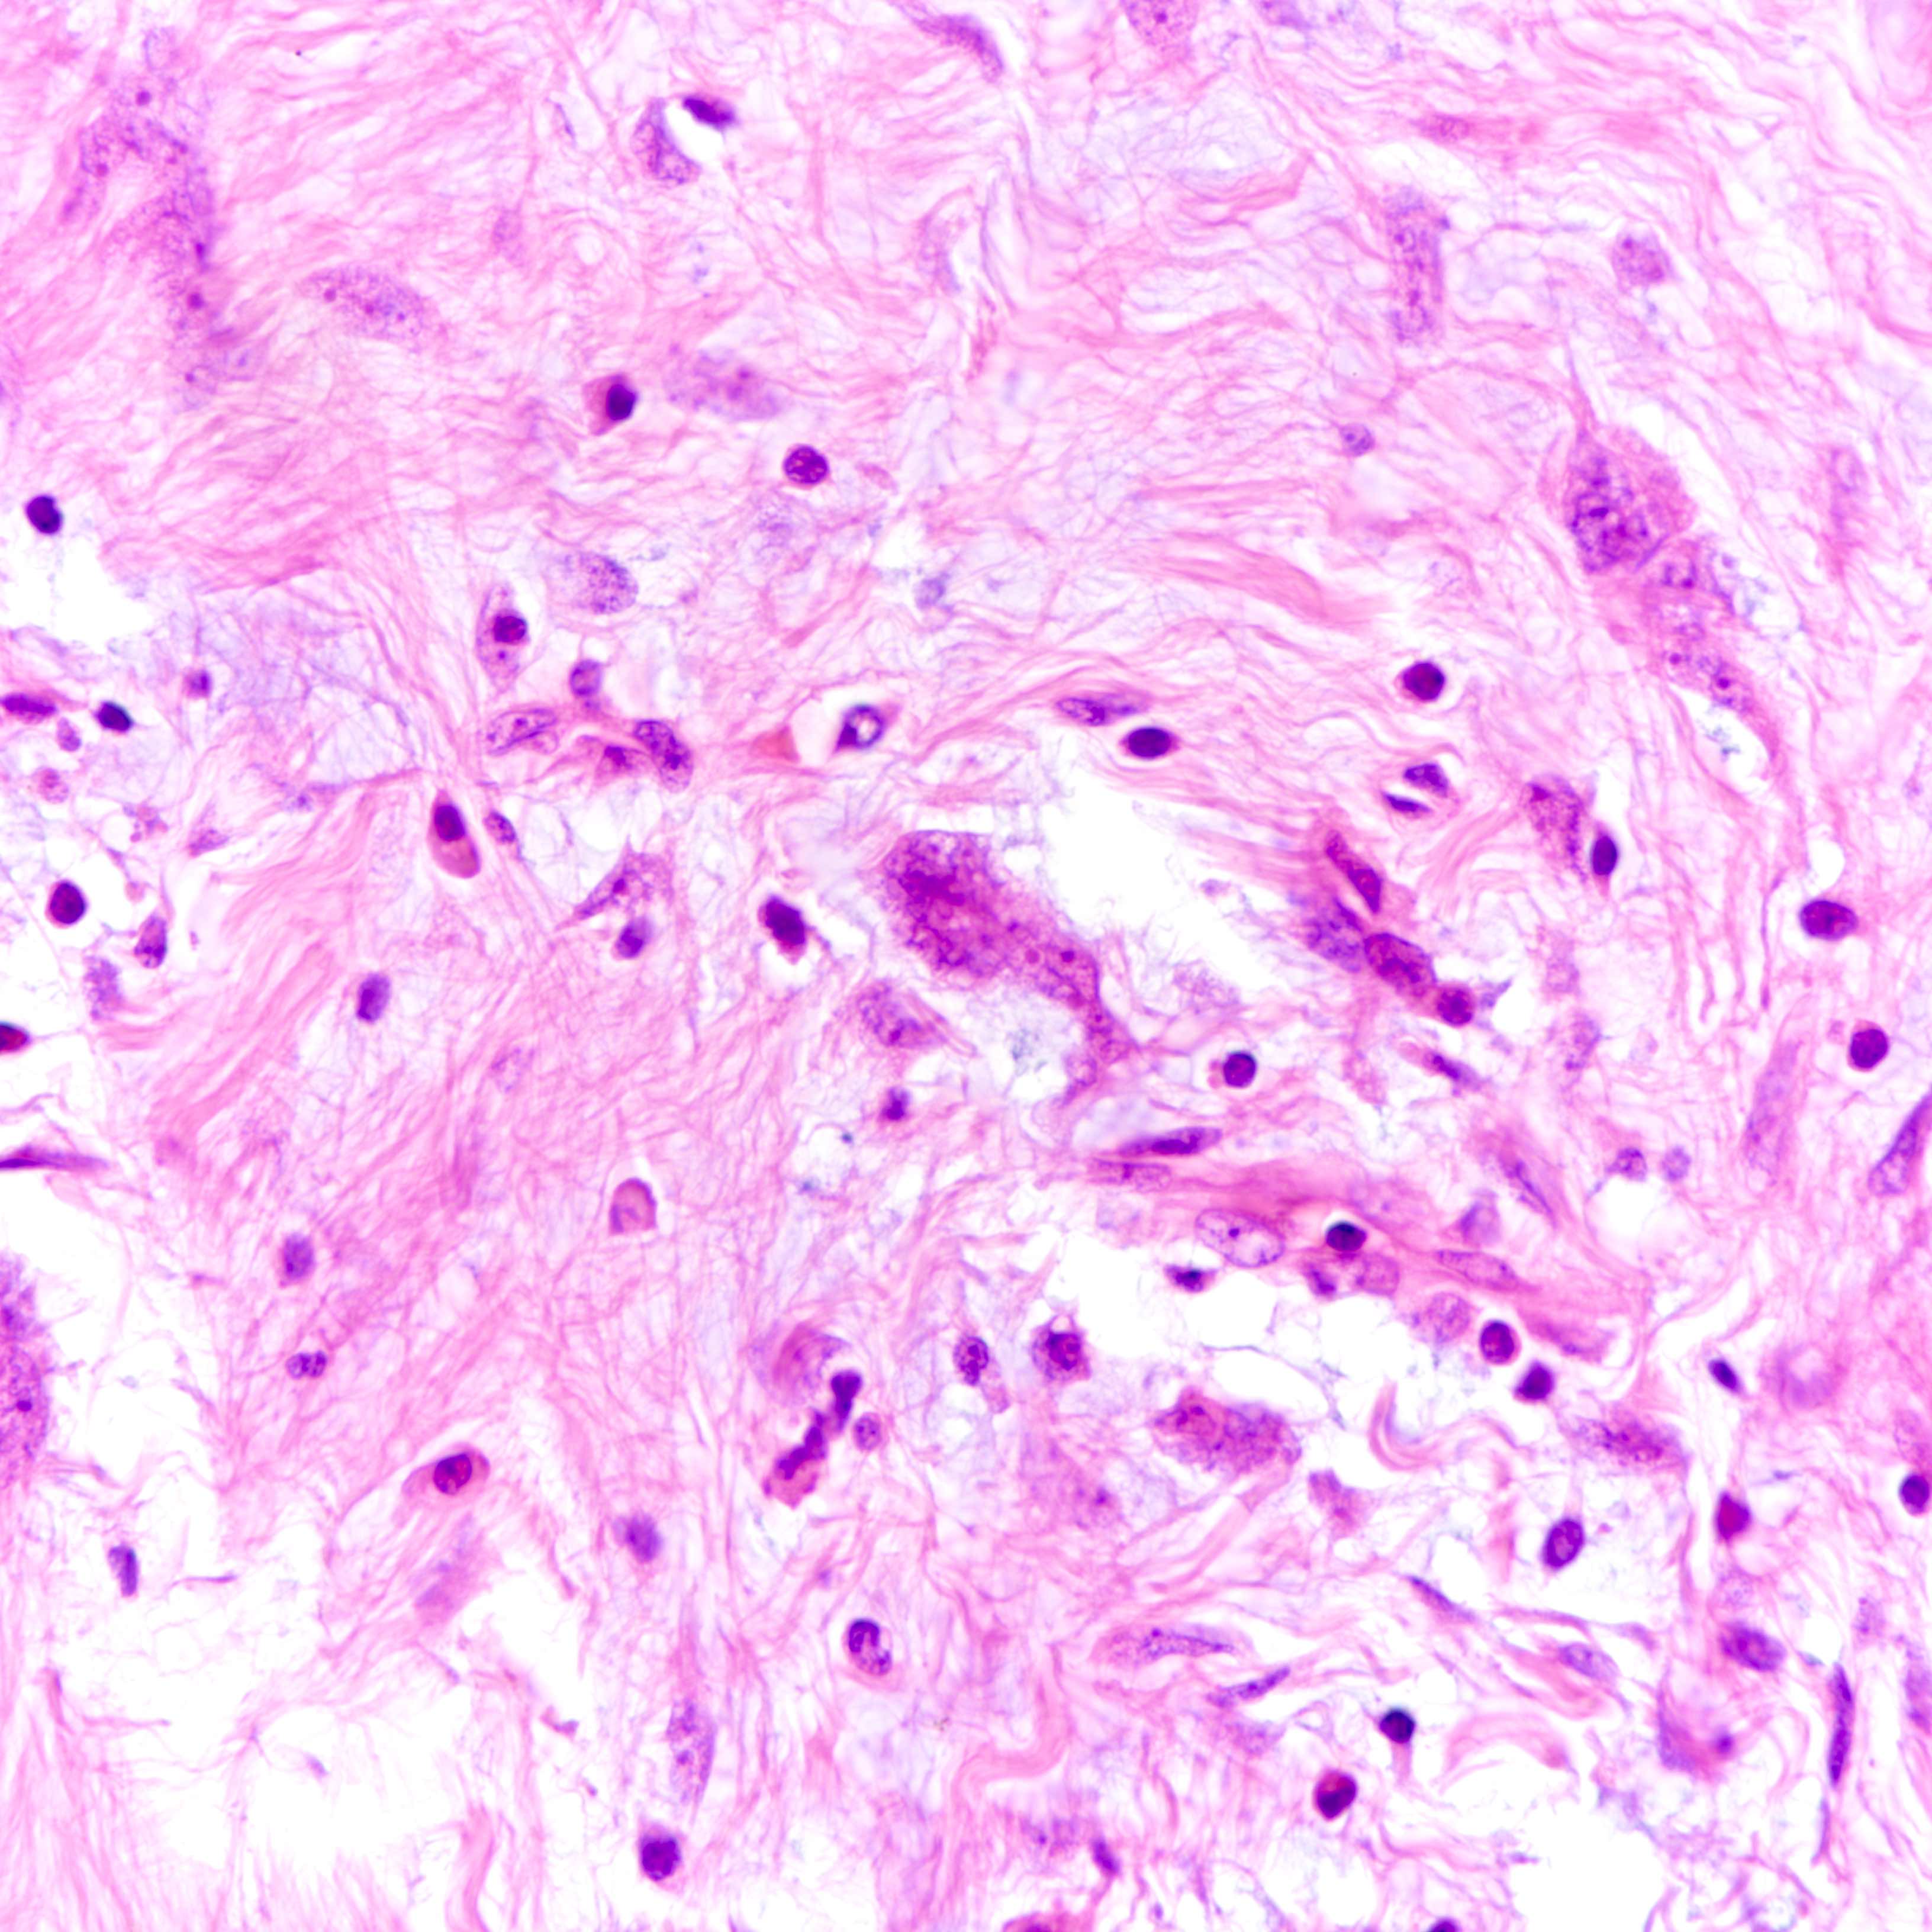 Stromal giant cells